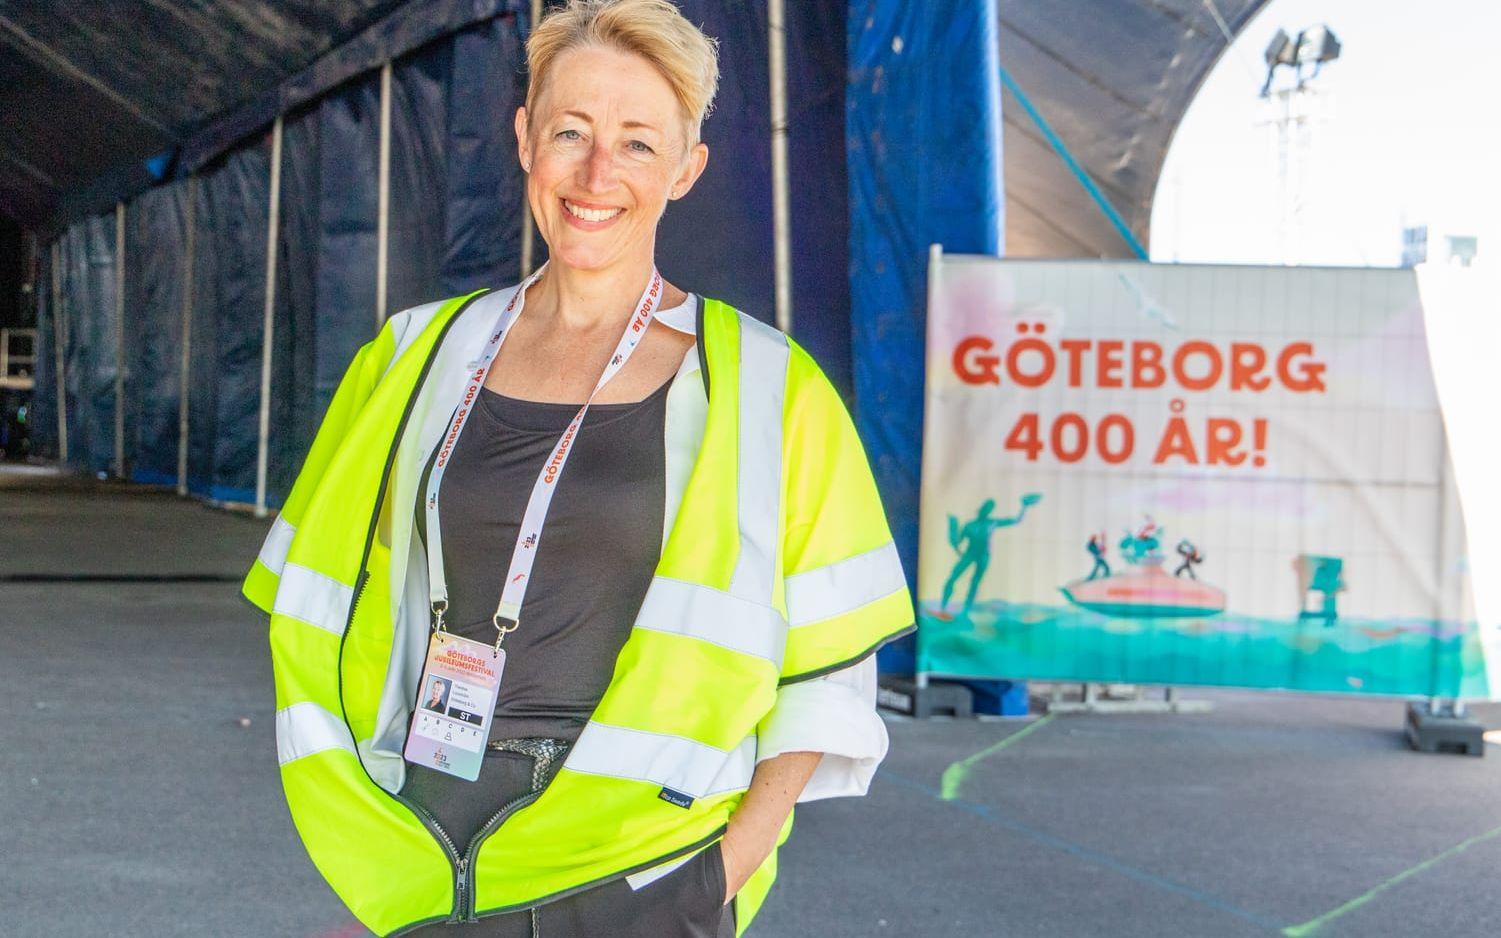 Tidigare har Therese Looström arrangerat evenemang som Göteborgs Kulturkalas, Vetenskapsfestivalen, Gothenburg Green World och European Choir Games.